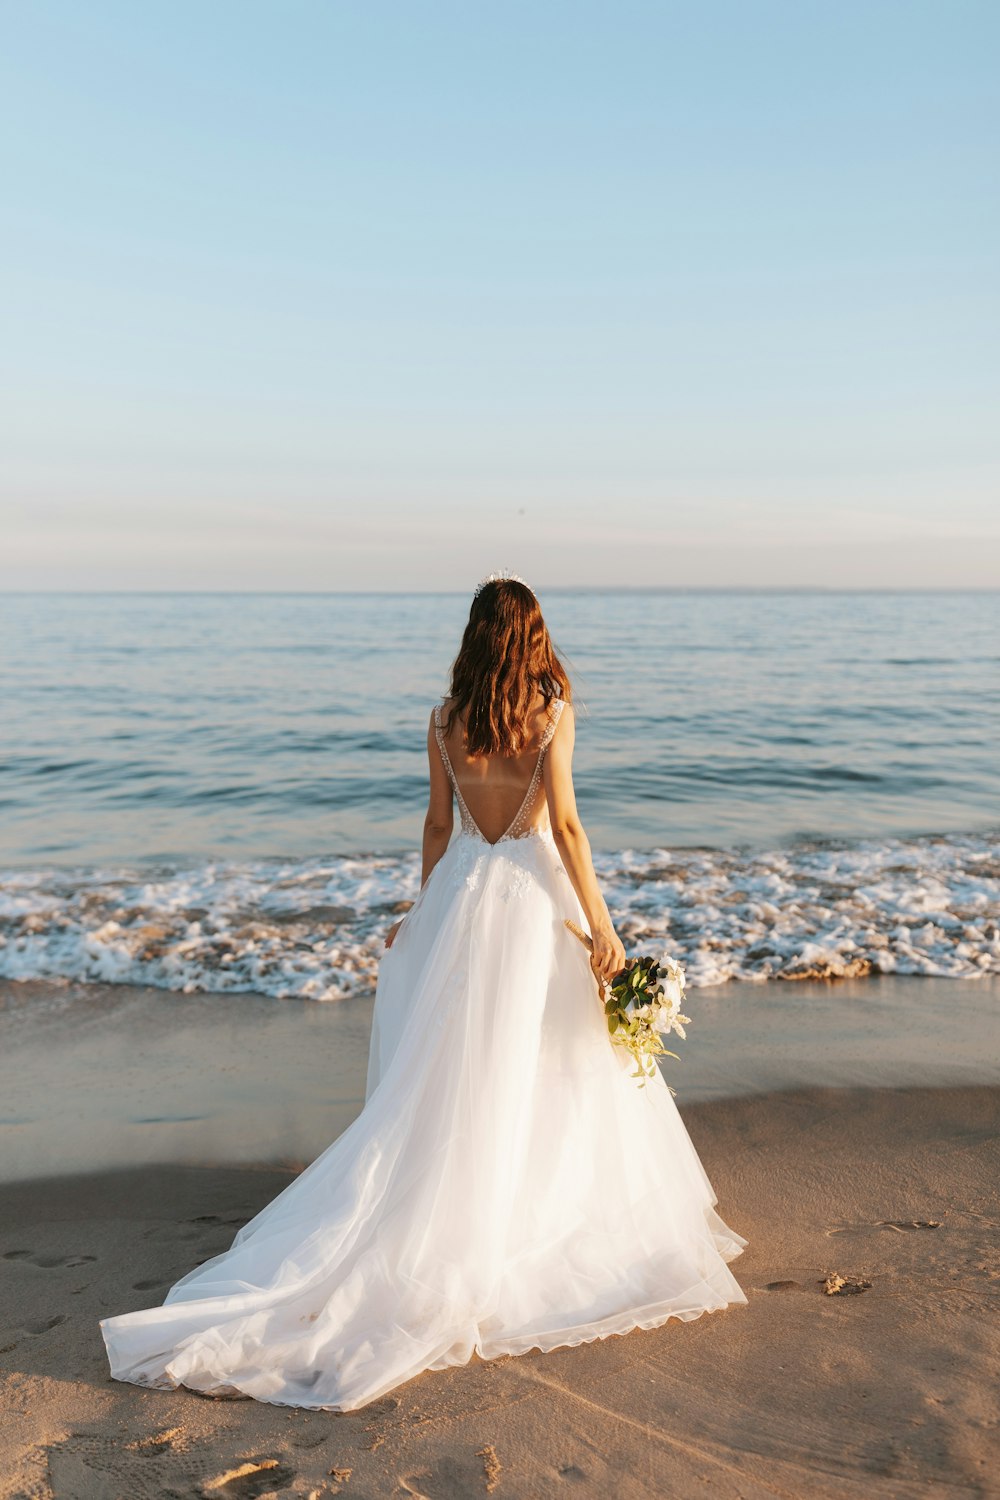 낮 동안 해변에 서 있는 하얀 웨딩 드레스를 입은 여자